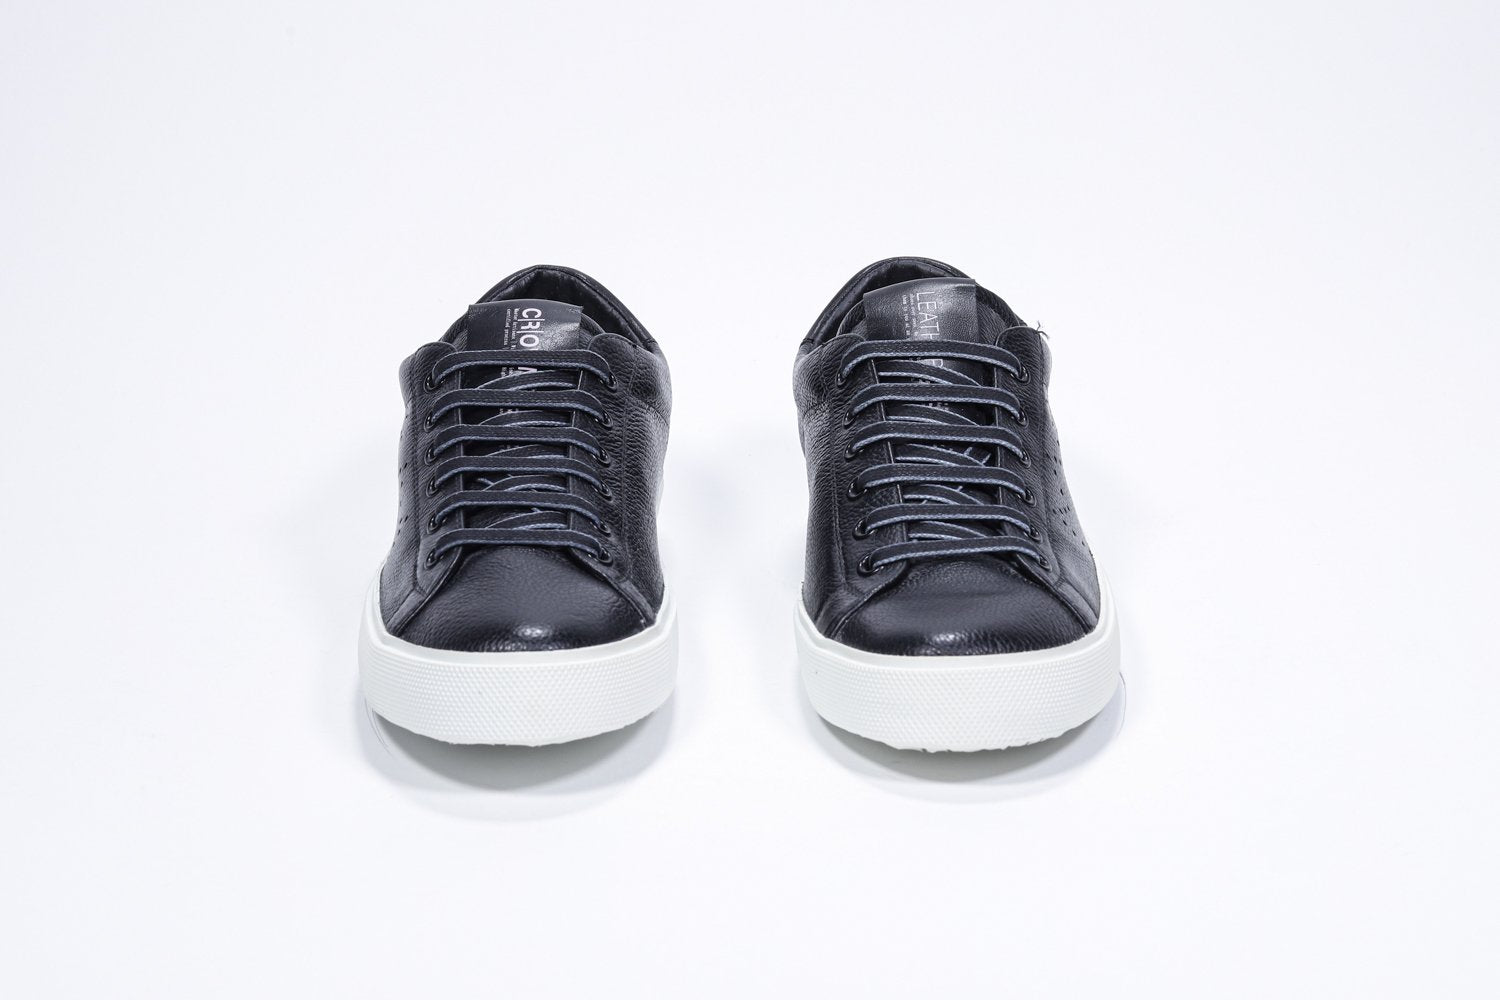 Vorderansicht des schwarzen Low Top sneaker mit perforiertem Kronenlogo auf dem Obermaterial. Schaft aus Vollleder und weiße Gummisohle.